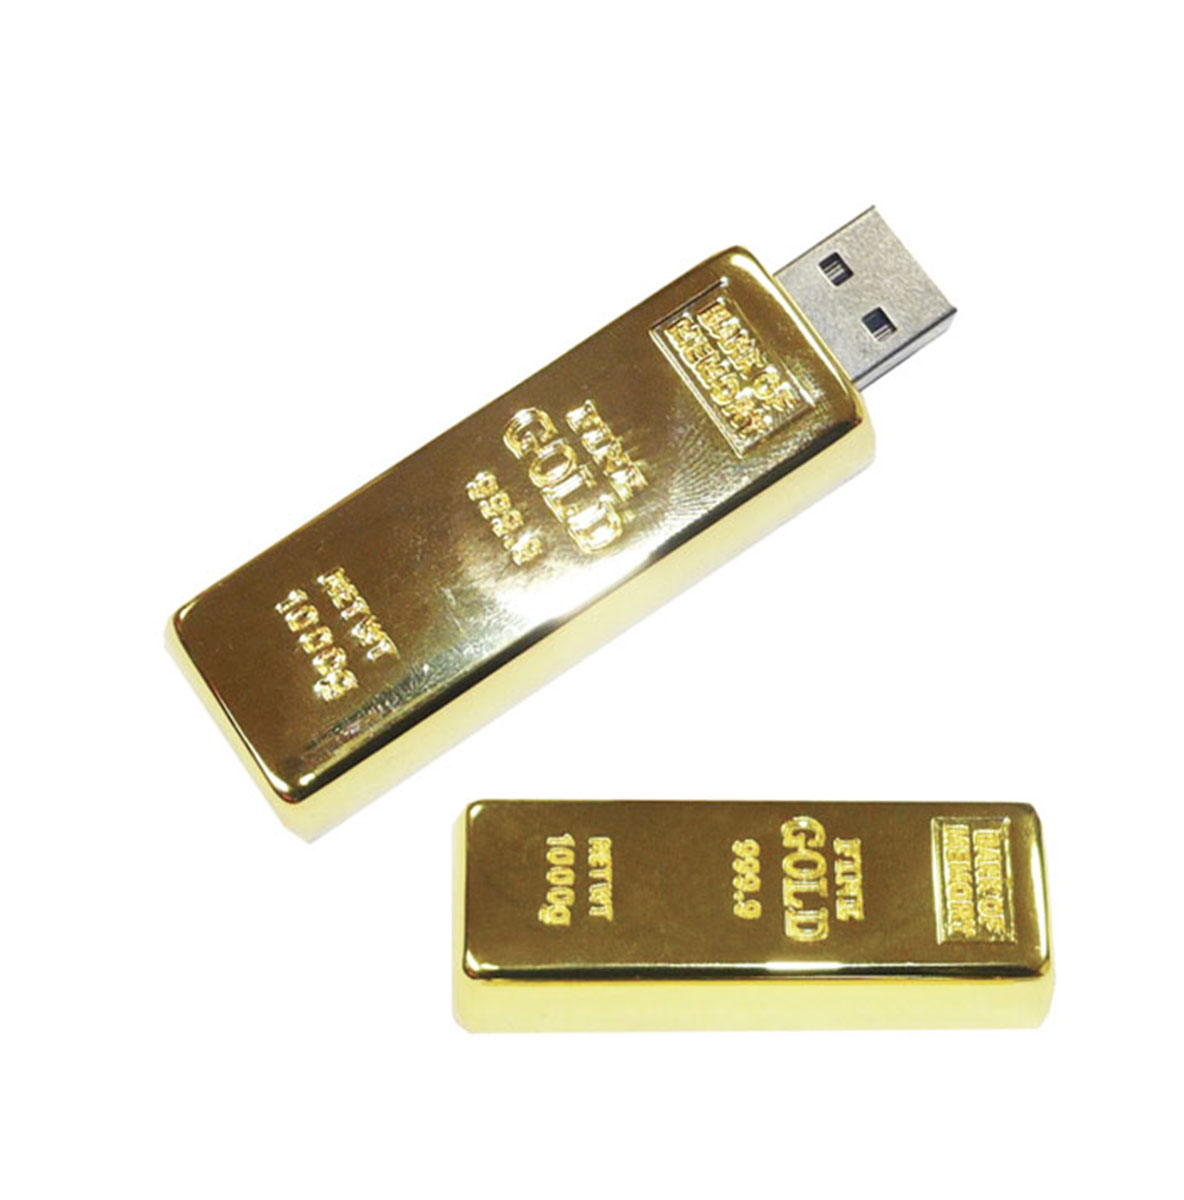 Gold Bar USB Flash Drive